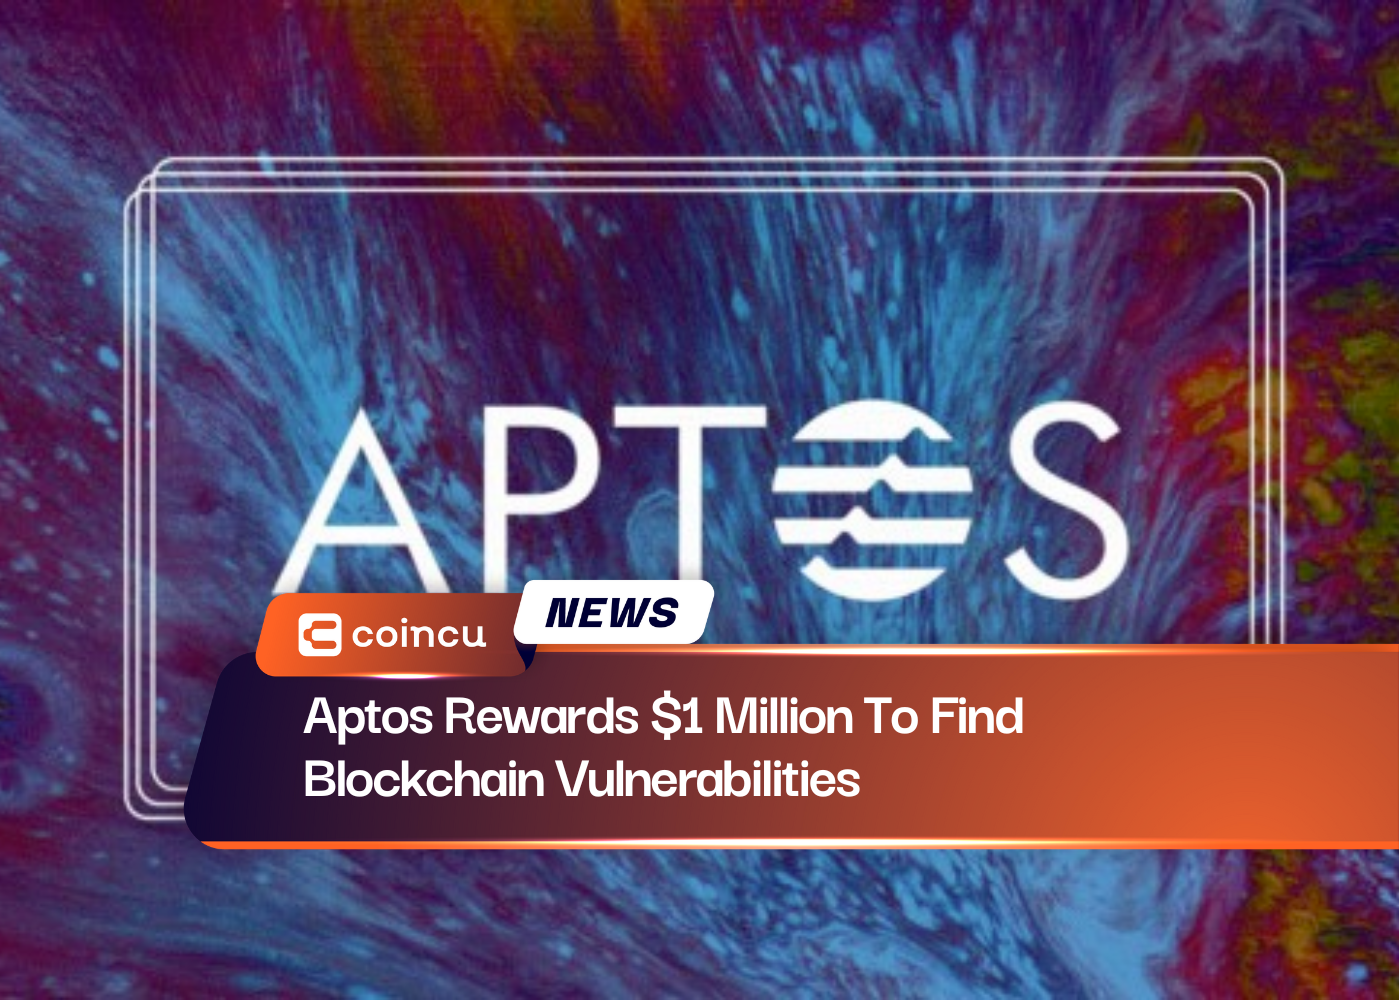 Aptos Rewards $1 Million To Find Blockchain Vulnerabilities